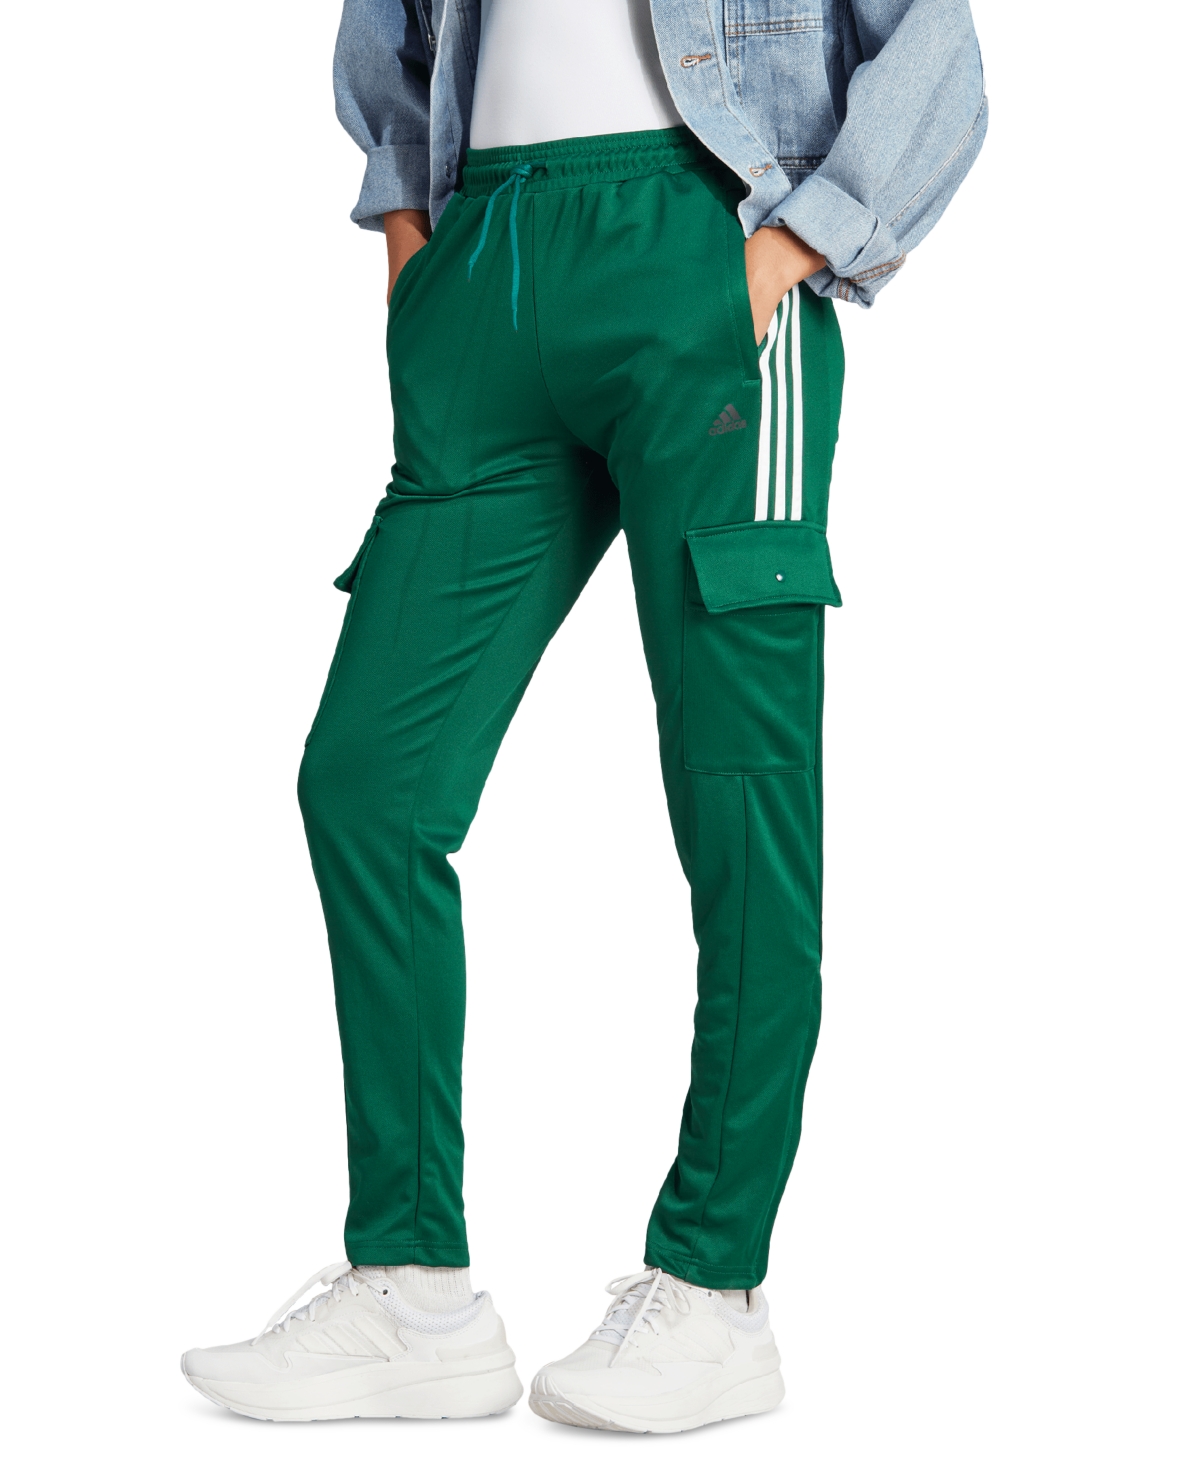 Adidas Originals Women's Tiro Snap-closure Cargo Pants In Collegiate Green,white